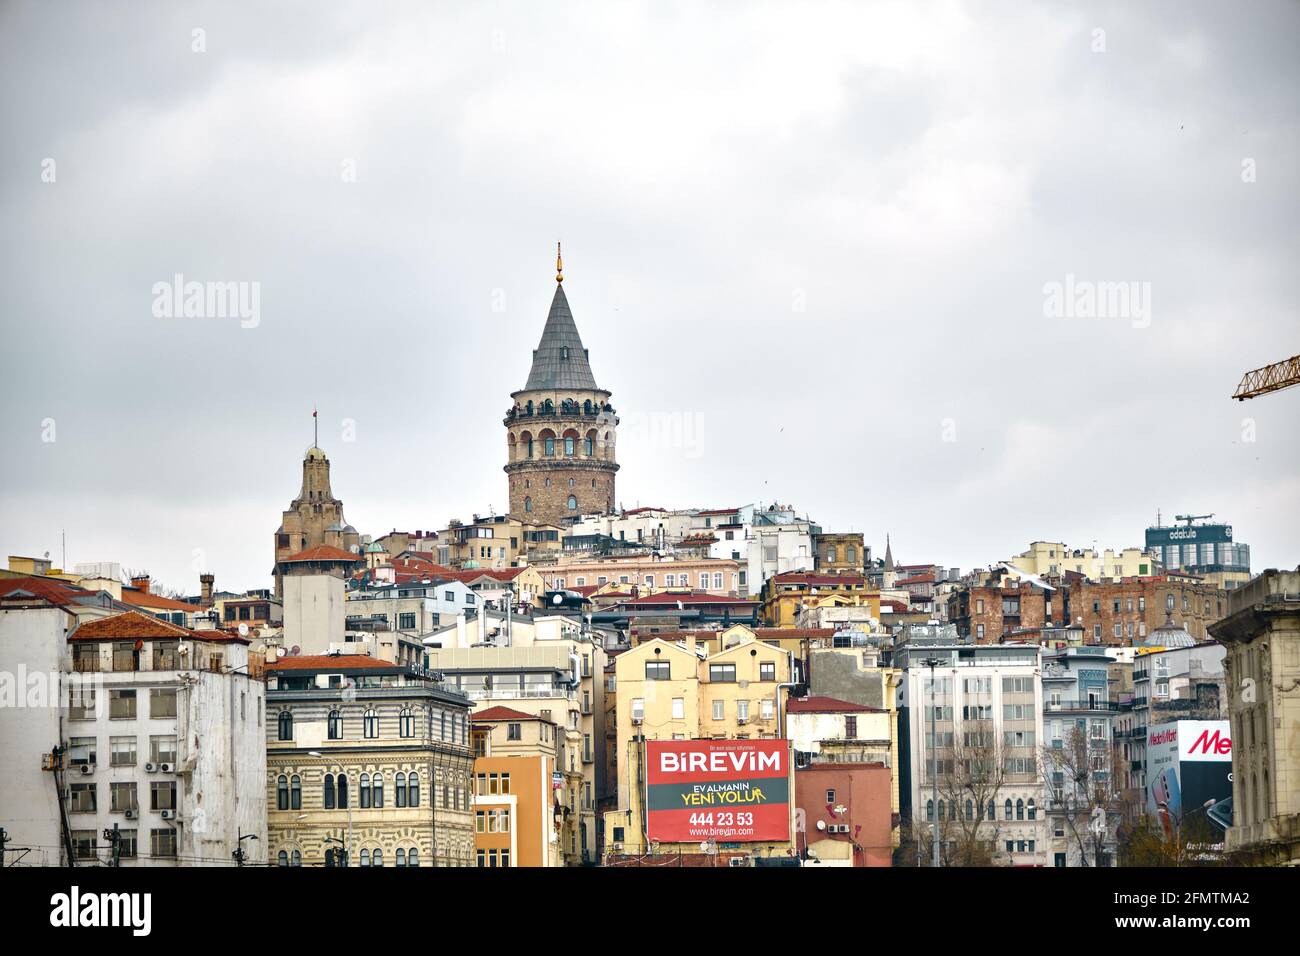 Der berühmte galata-Turm von istanbul wurde von istanbul bosporus fotografiert. Er wurde von genuesischen Matrosen für die Beobachtung des bosporus von konstantinopel errichtet. Stockfoto